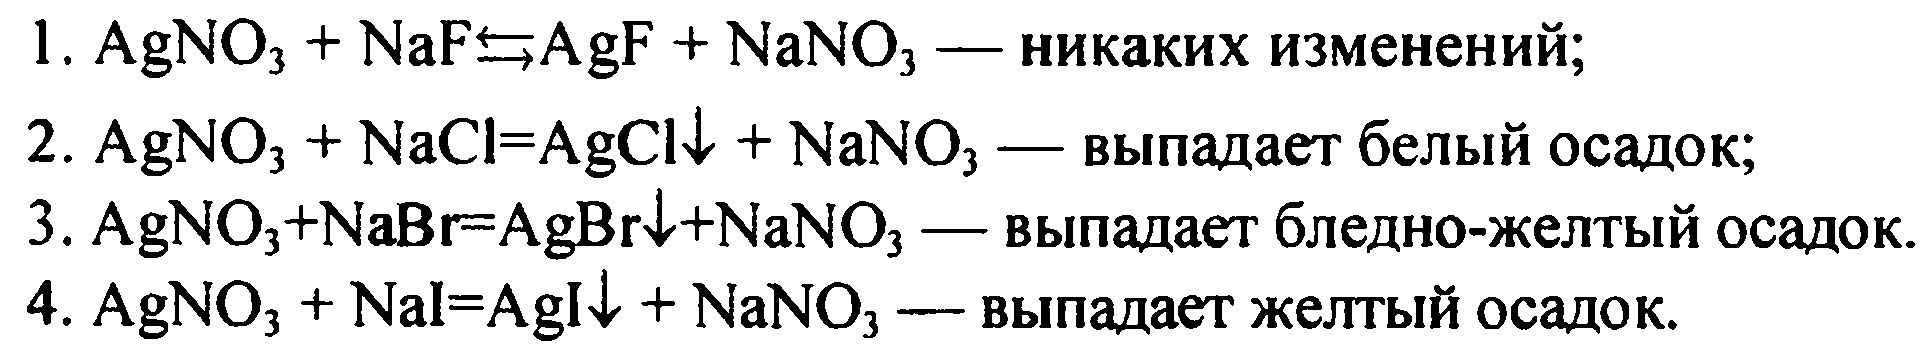 Как различить соли: NaF, NaCl, NaBr и NaI? 10 класс